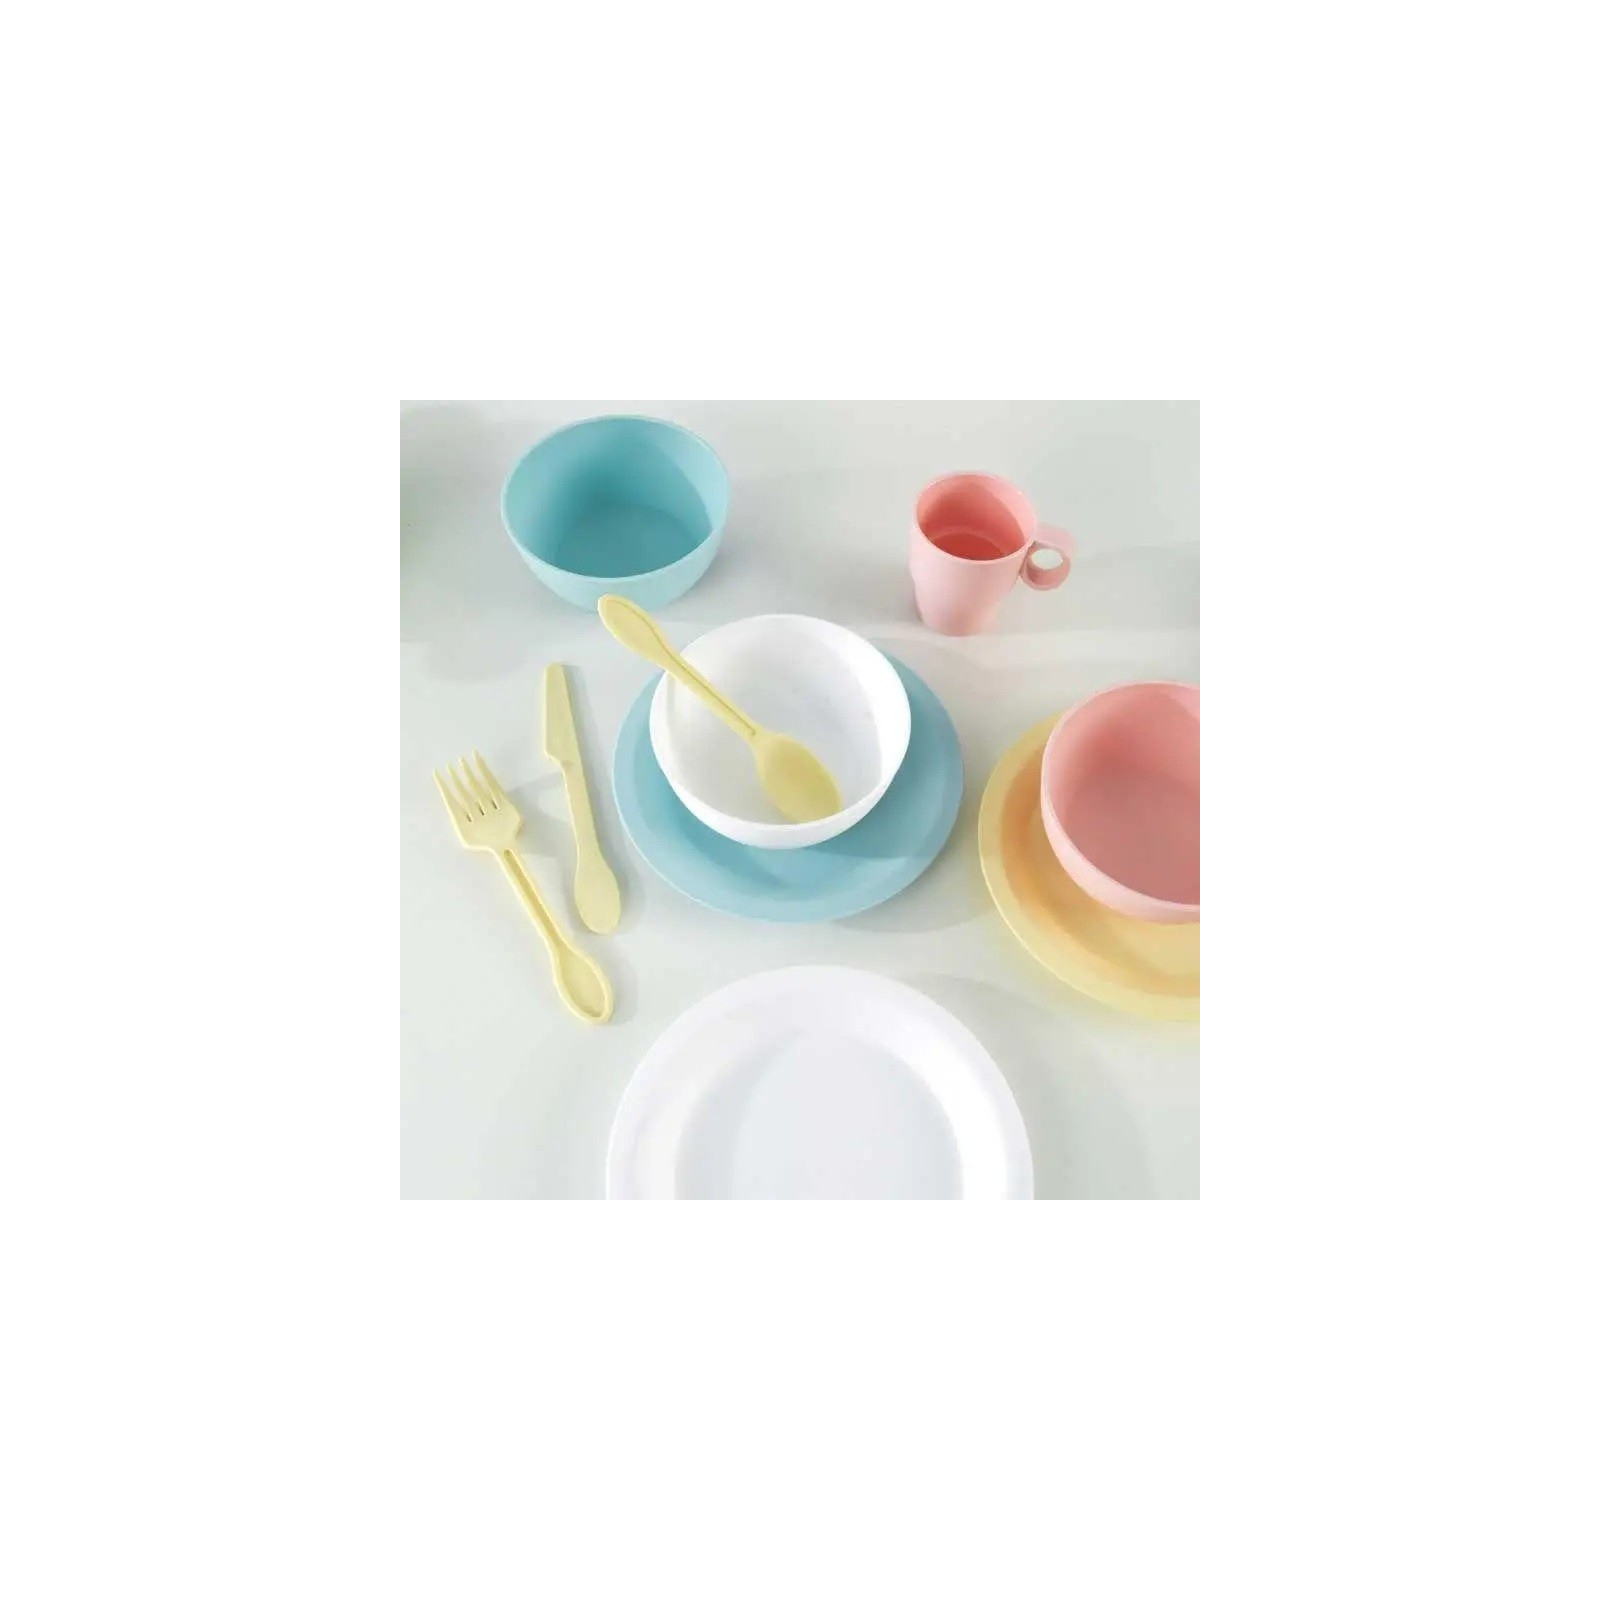 Игровой набор KidKraft набор детской посуды Пастель 27 предметов (63027) изображение 2